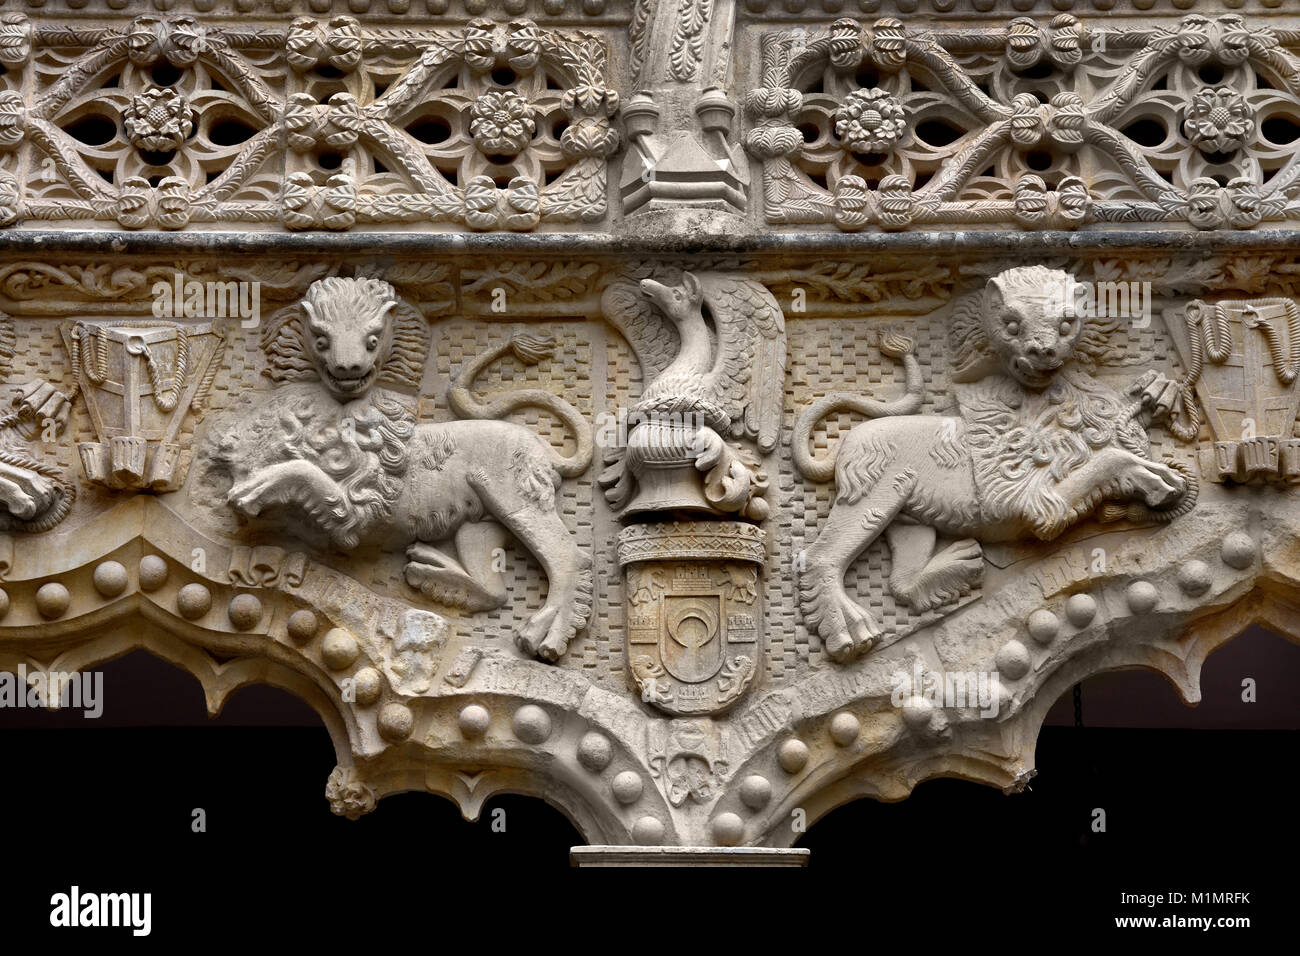 The Palace of El Infantado (Spanish: Palacio del Infantado)  Guadalajara, Spain. It was the seat of the Dukes of the Infantado.Palacio del Infantado (1480-83)  Guadalajara. Castilla-La Mancha. Spain Stock Photo